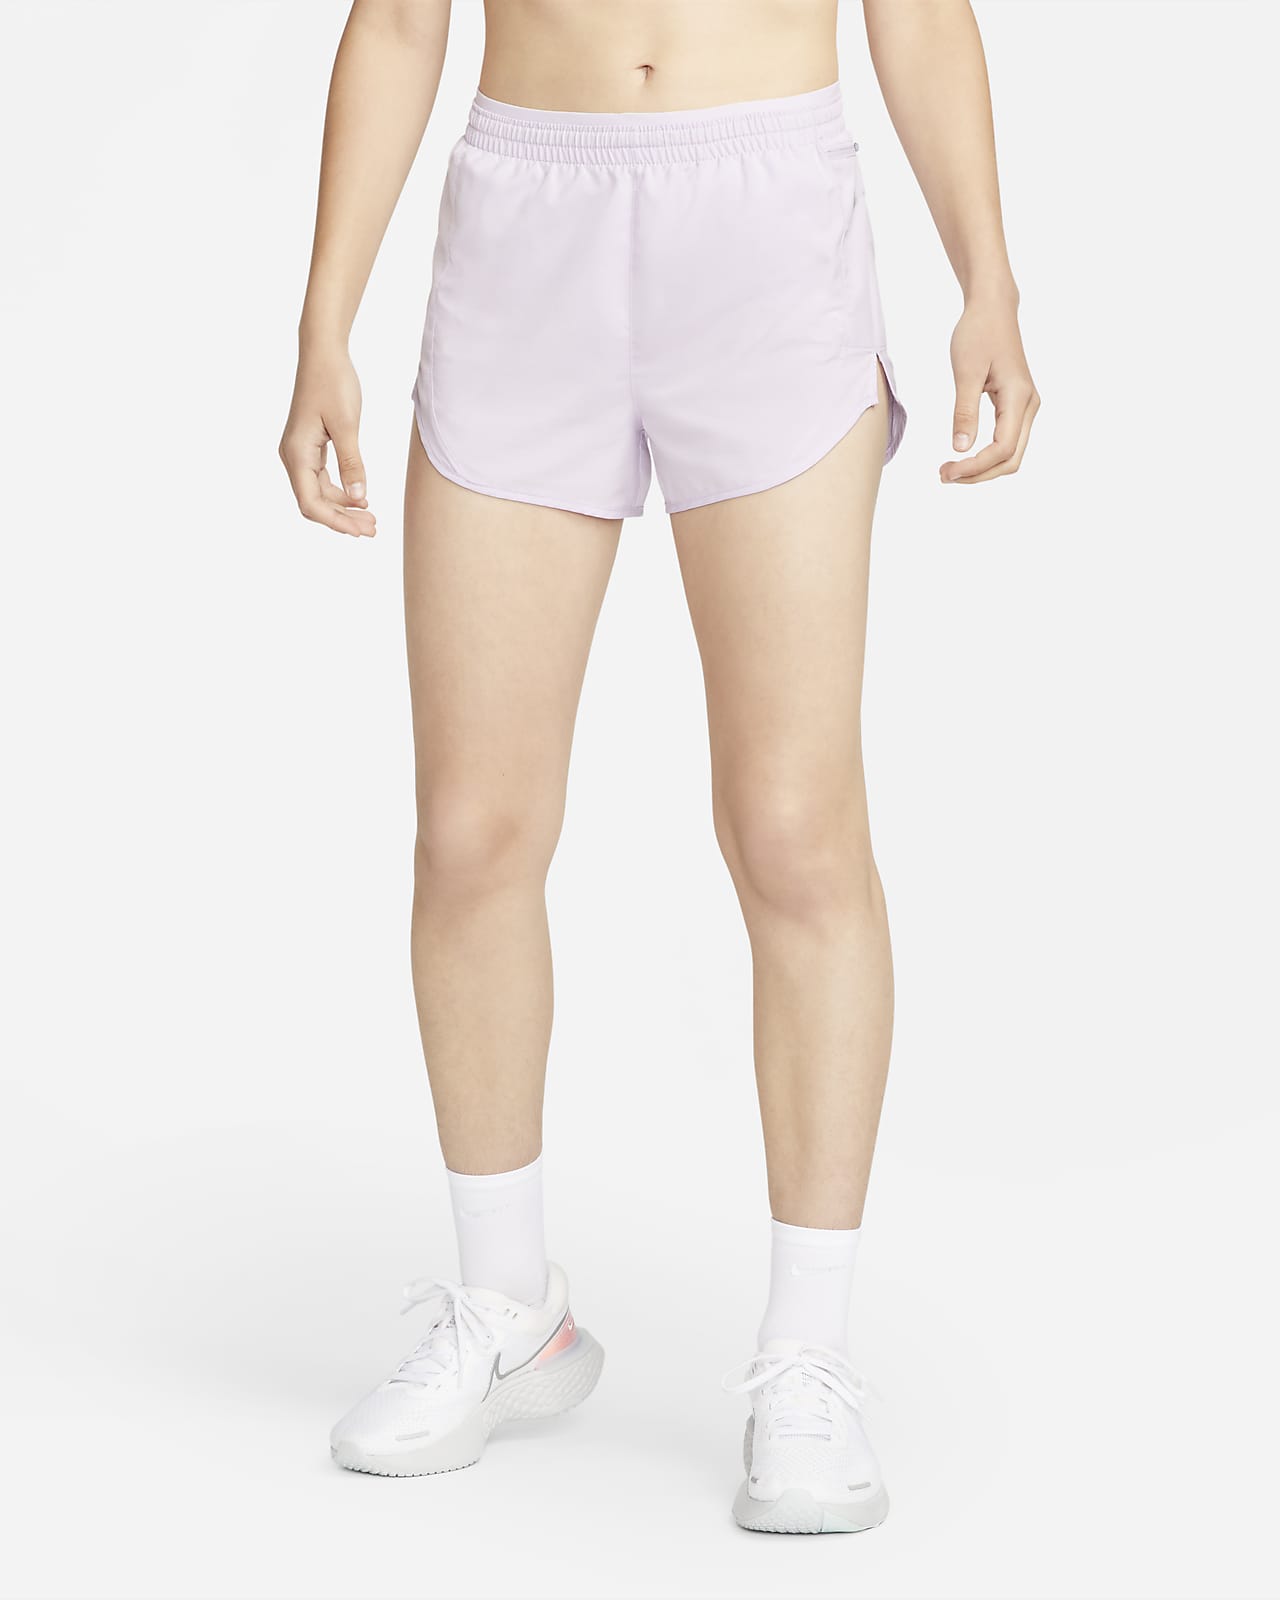 Nike Tempo Luxe 7,5 cm-es női futórövidnadrág